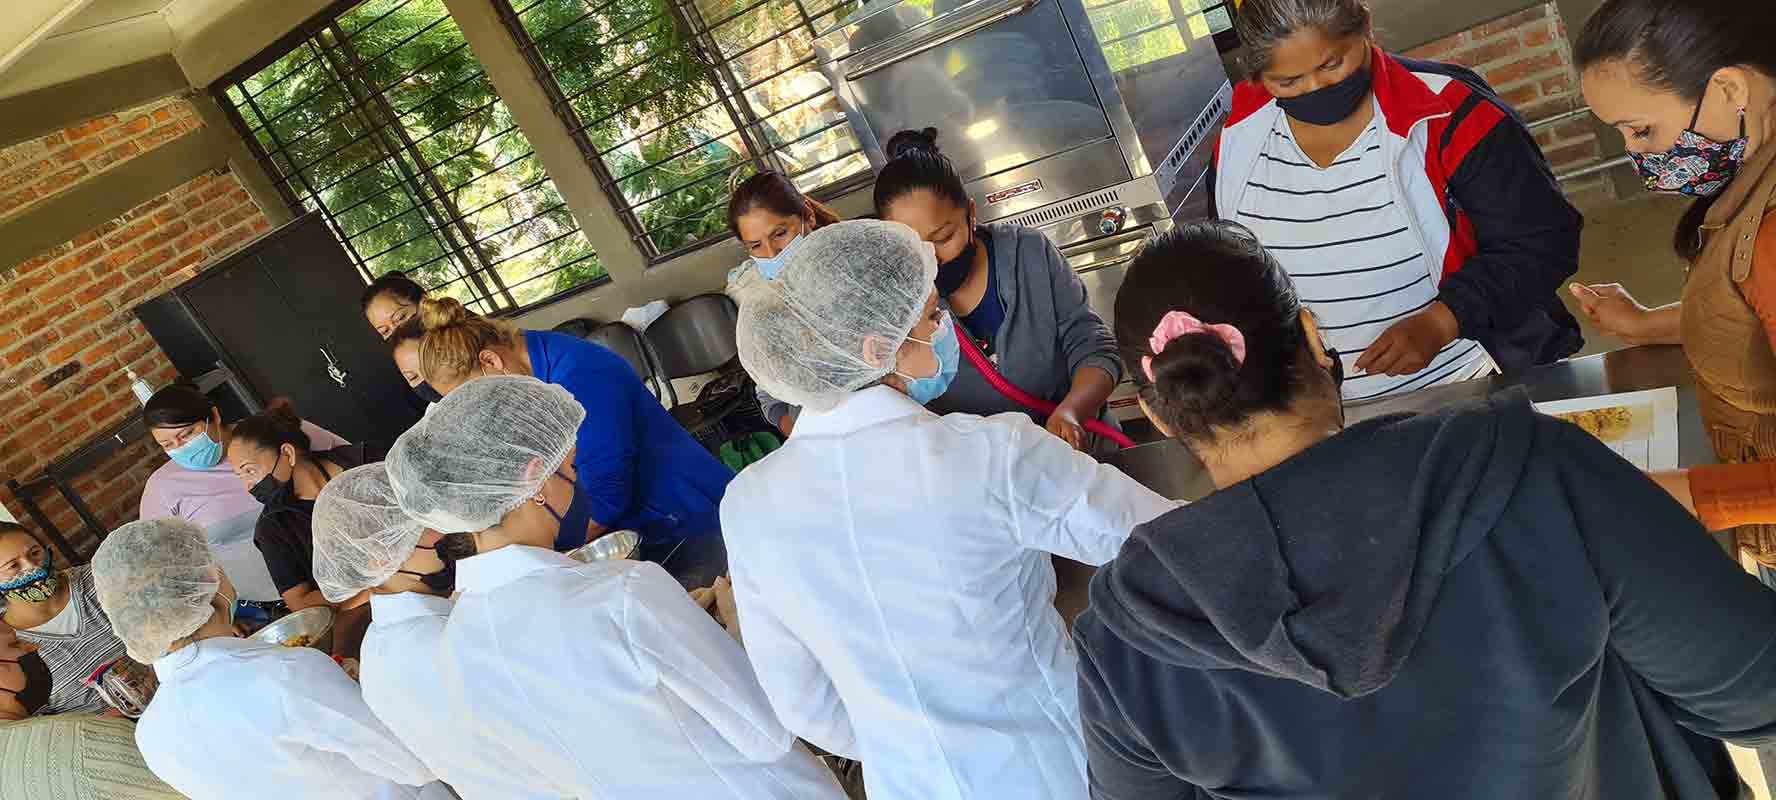 Alumnas de nutrición del Tec Guadalajara aplicaron sus conocimientos y crean menús nutritivos para comunidad marginada.